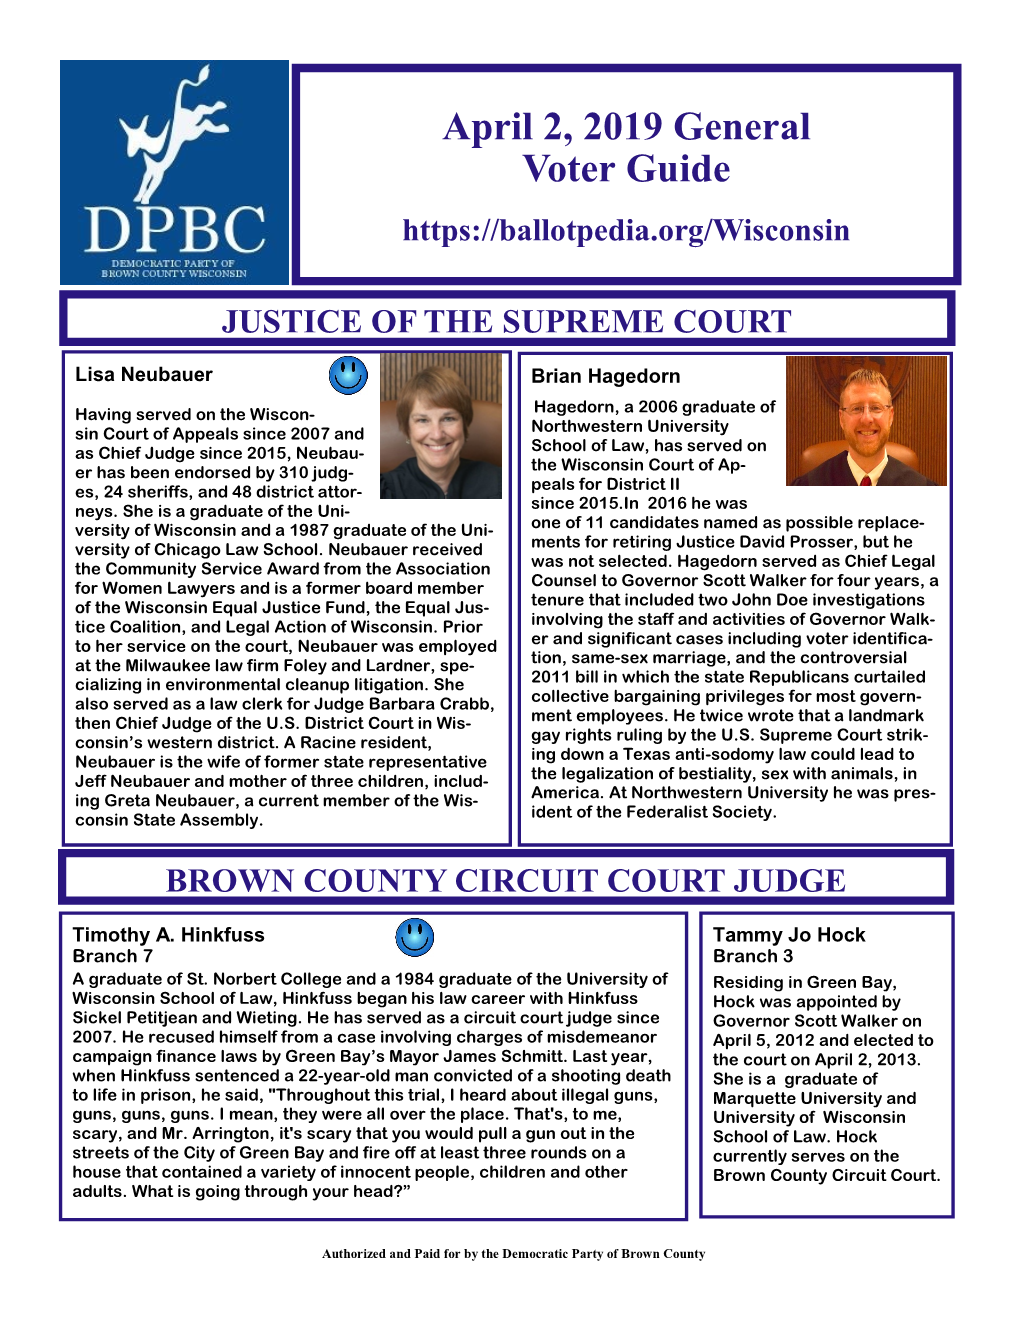 April 2, 2019 General Voter Guide